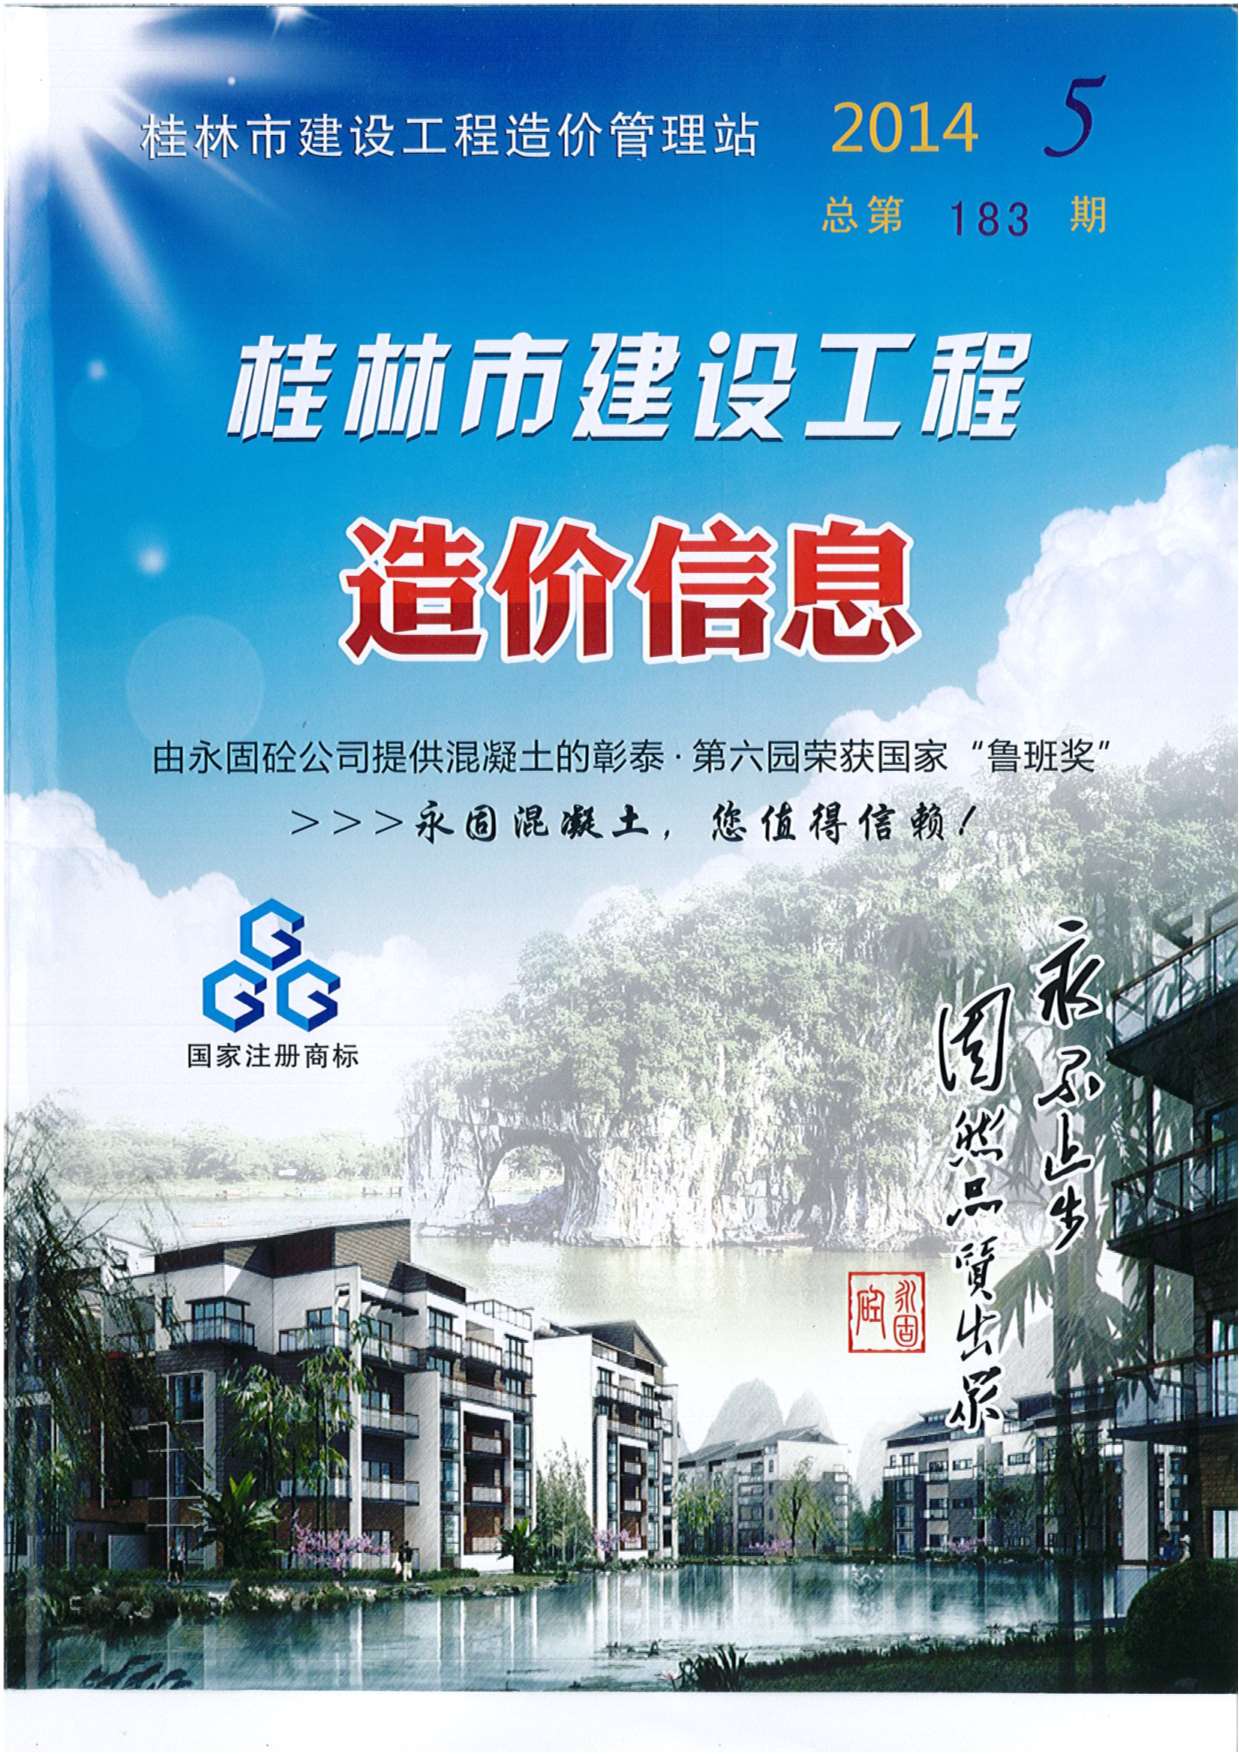 桂林市2014年5月建设工程造价信息